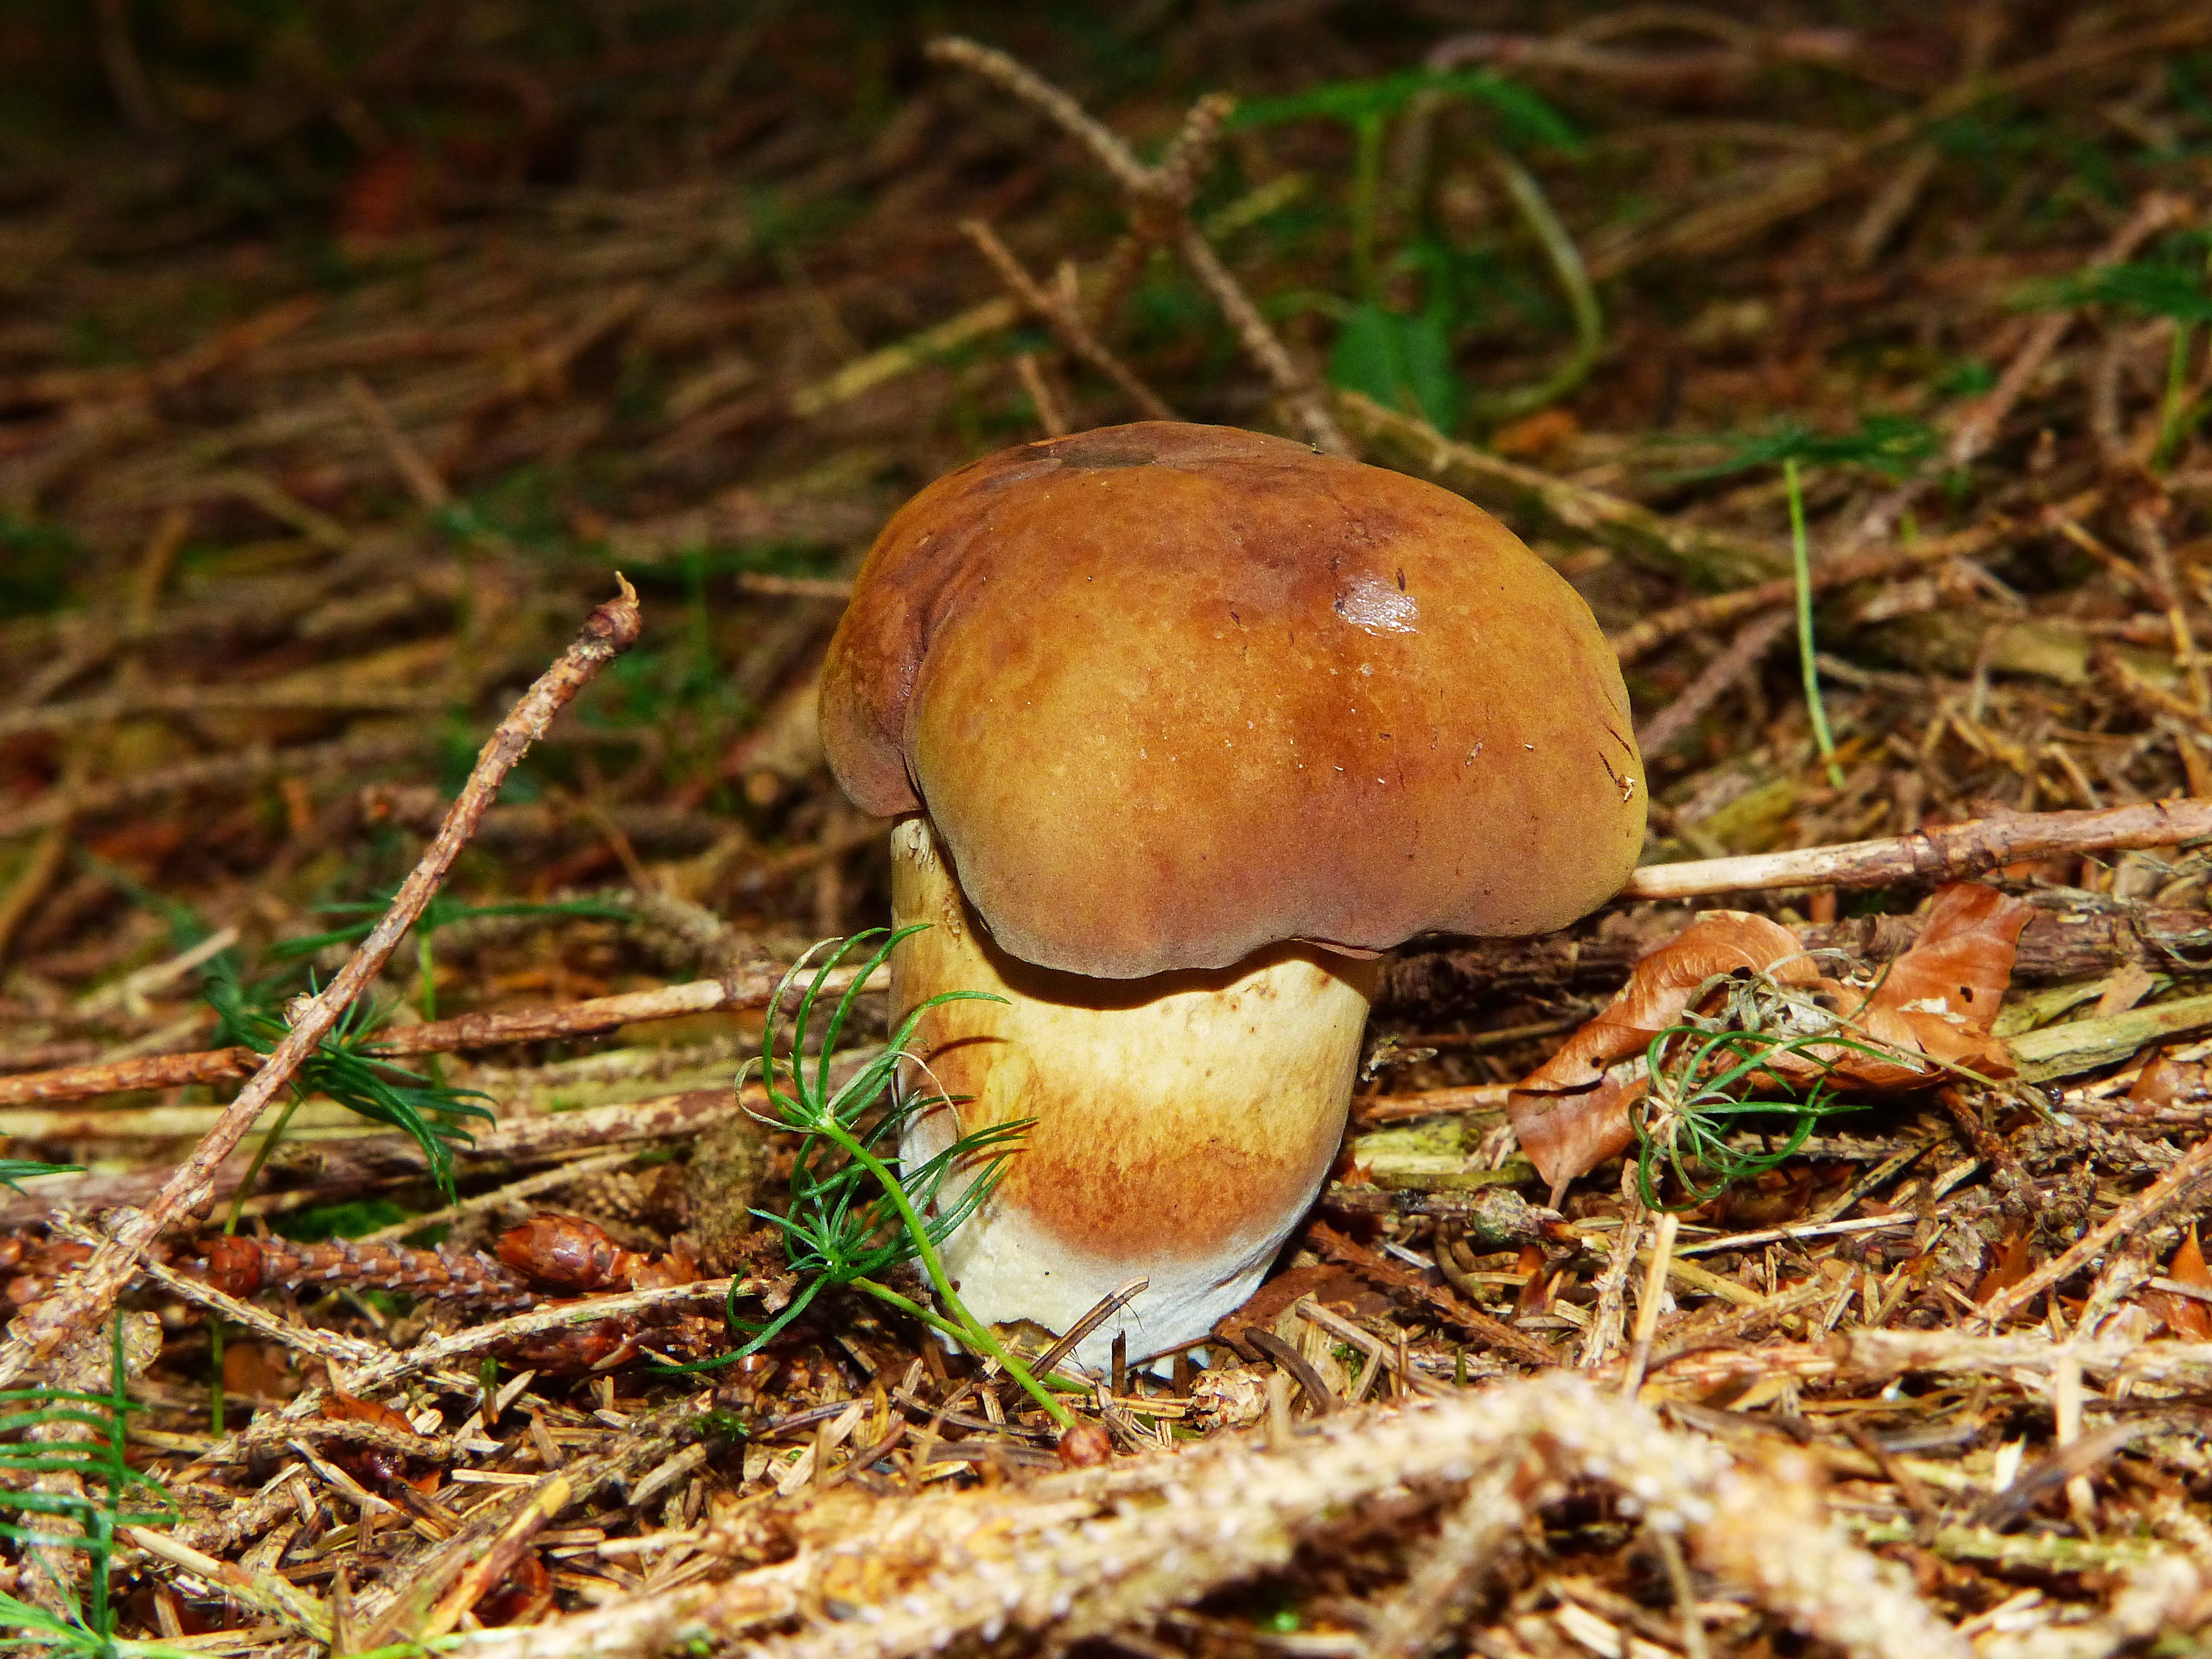 Съедобные грибы с коричневой шляпкой